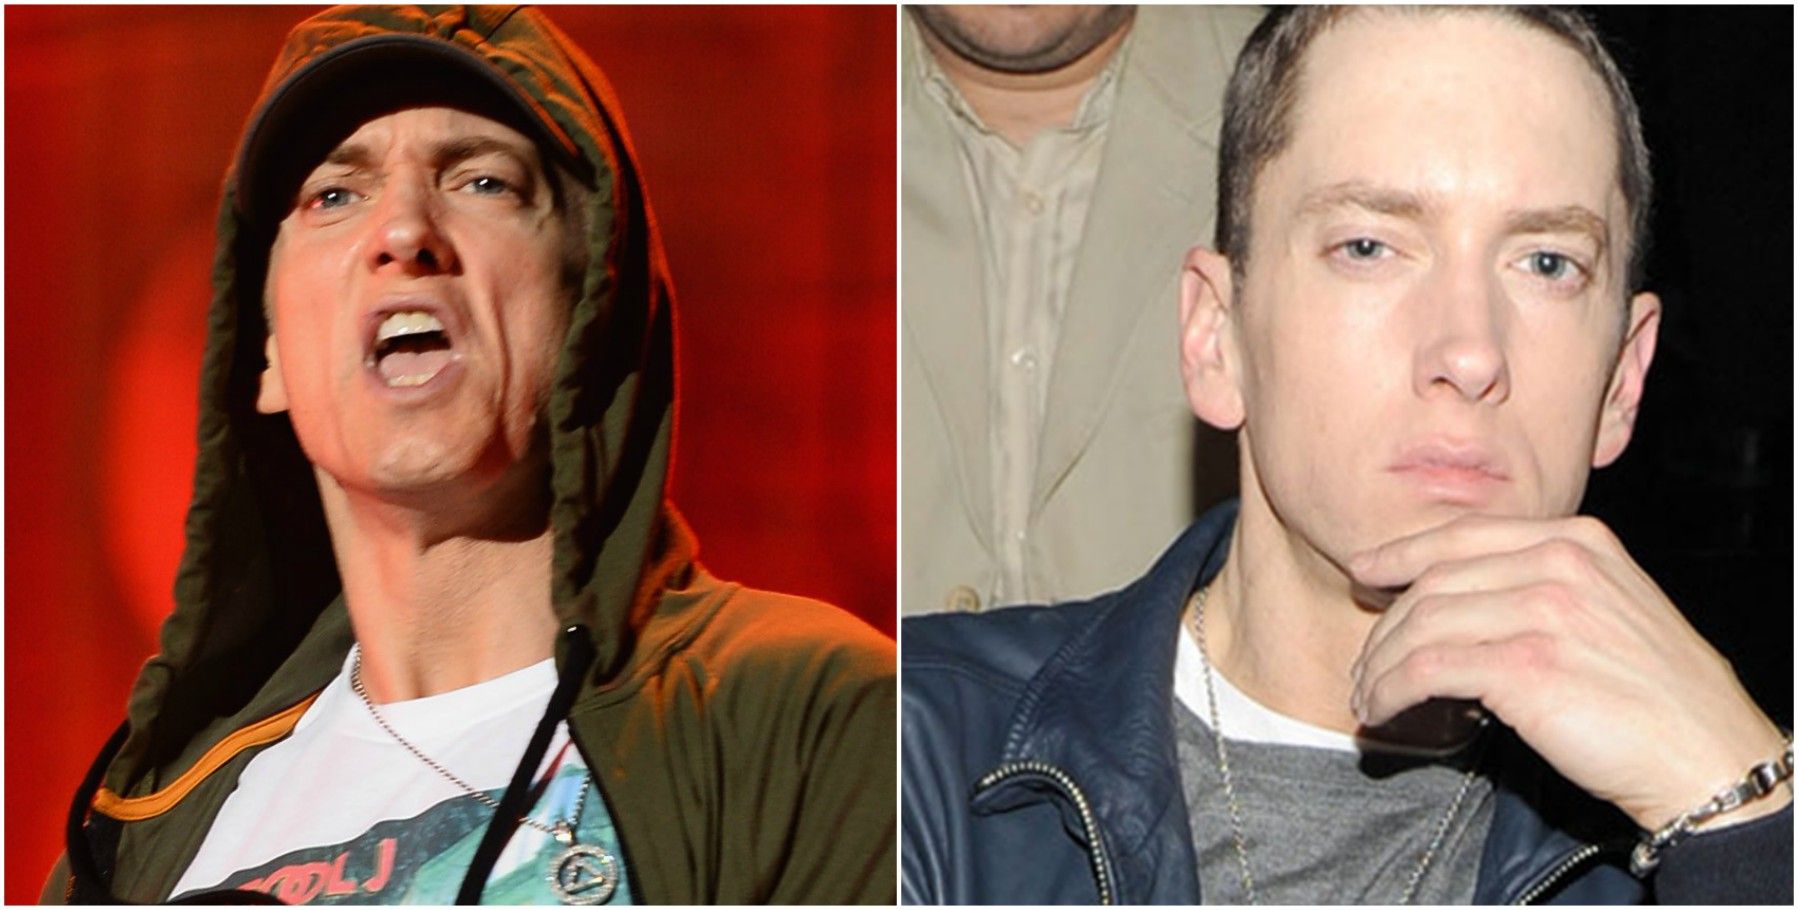 15 segredos obscuros sobre o Eminem revelados